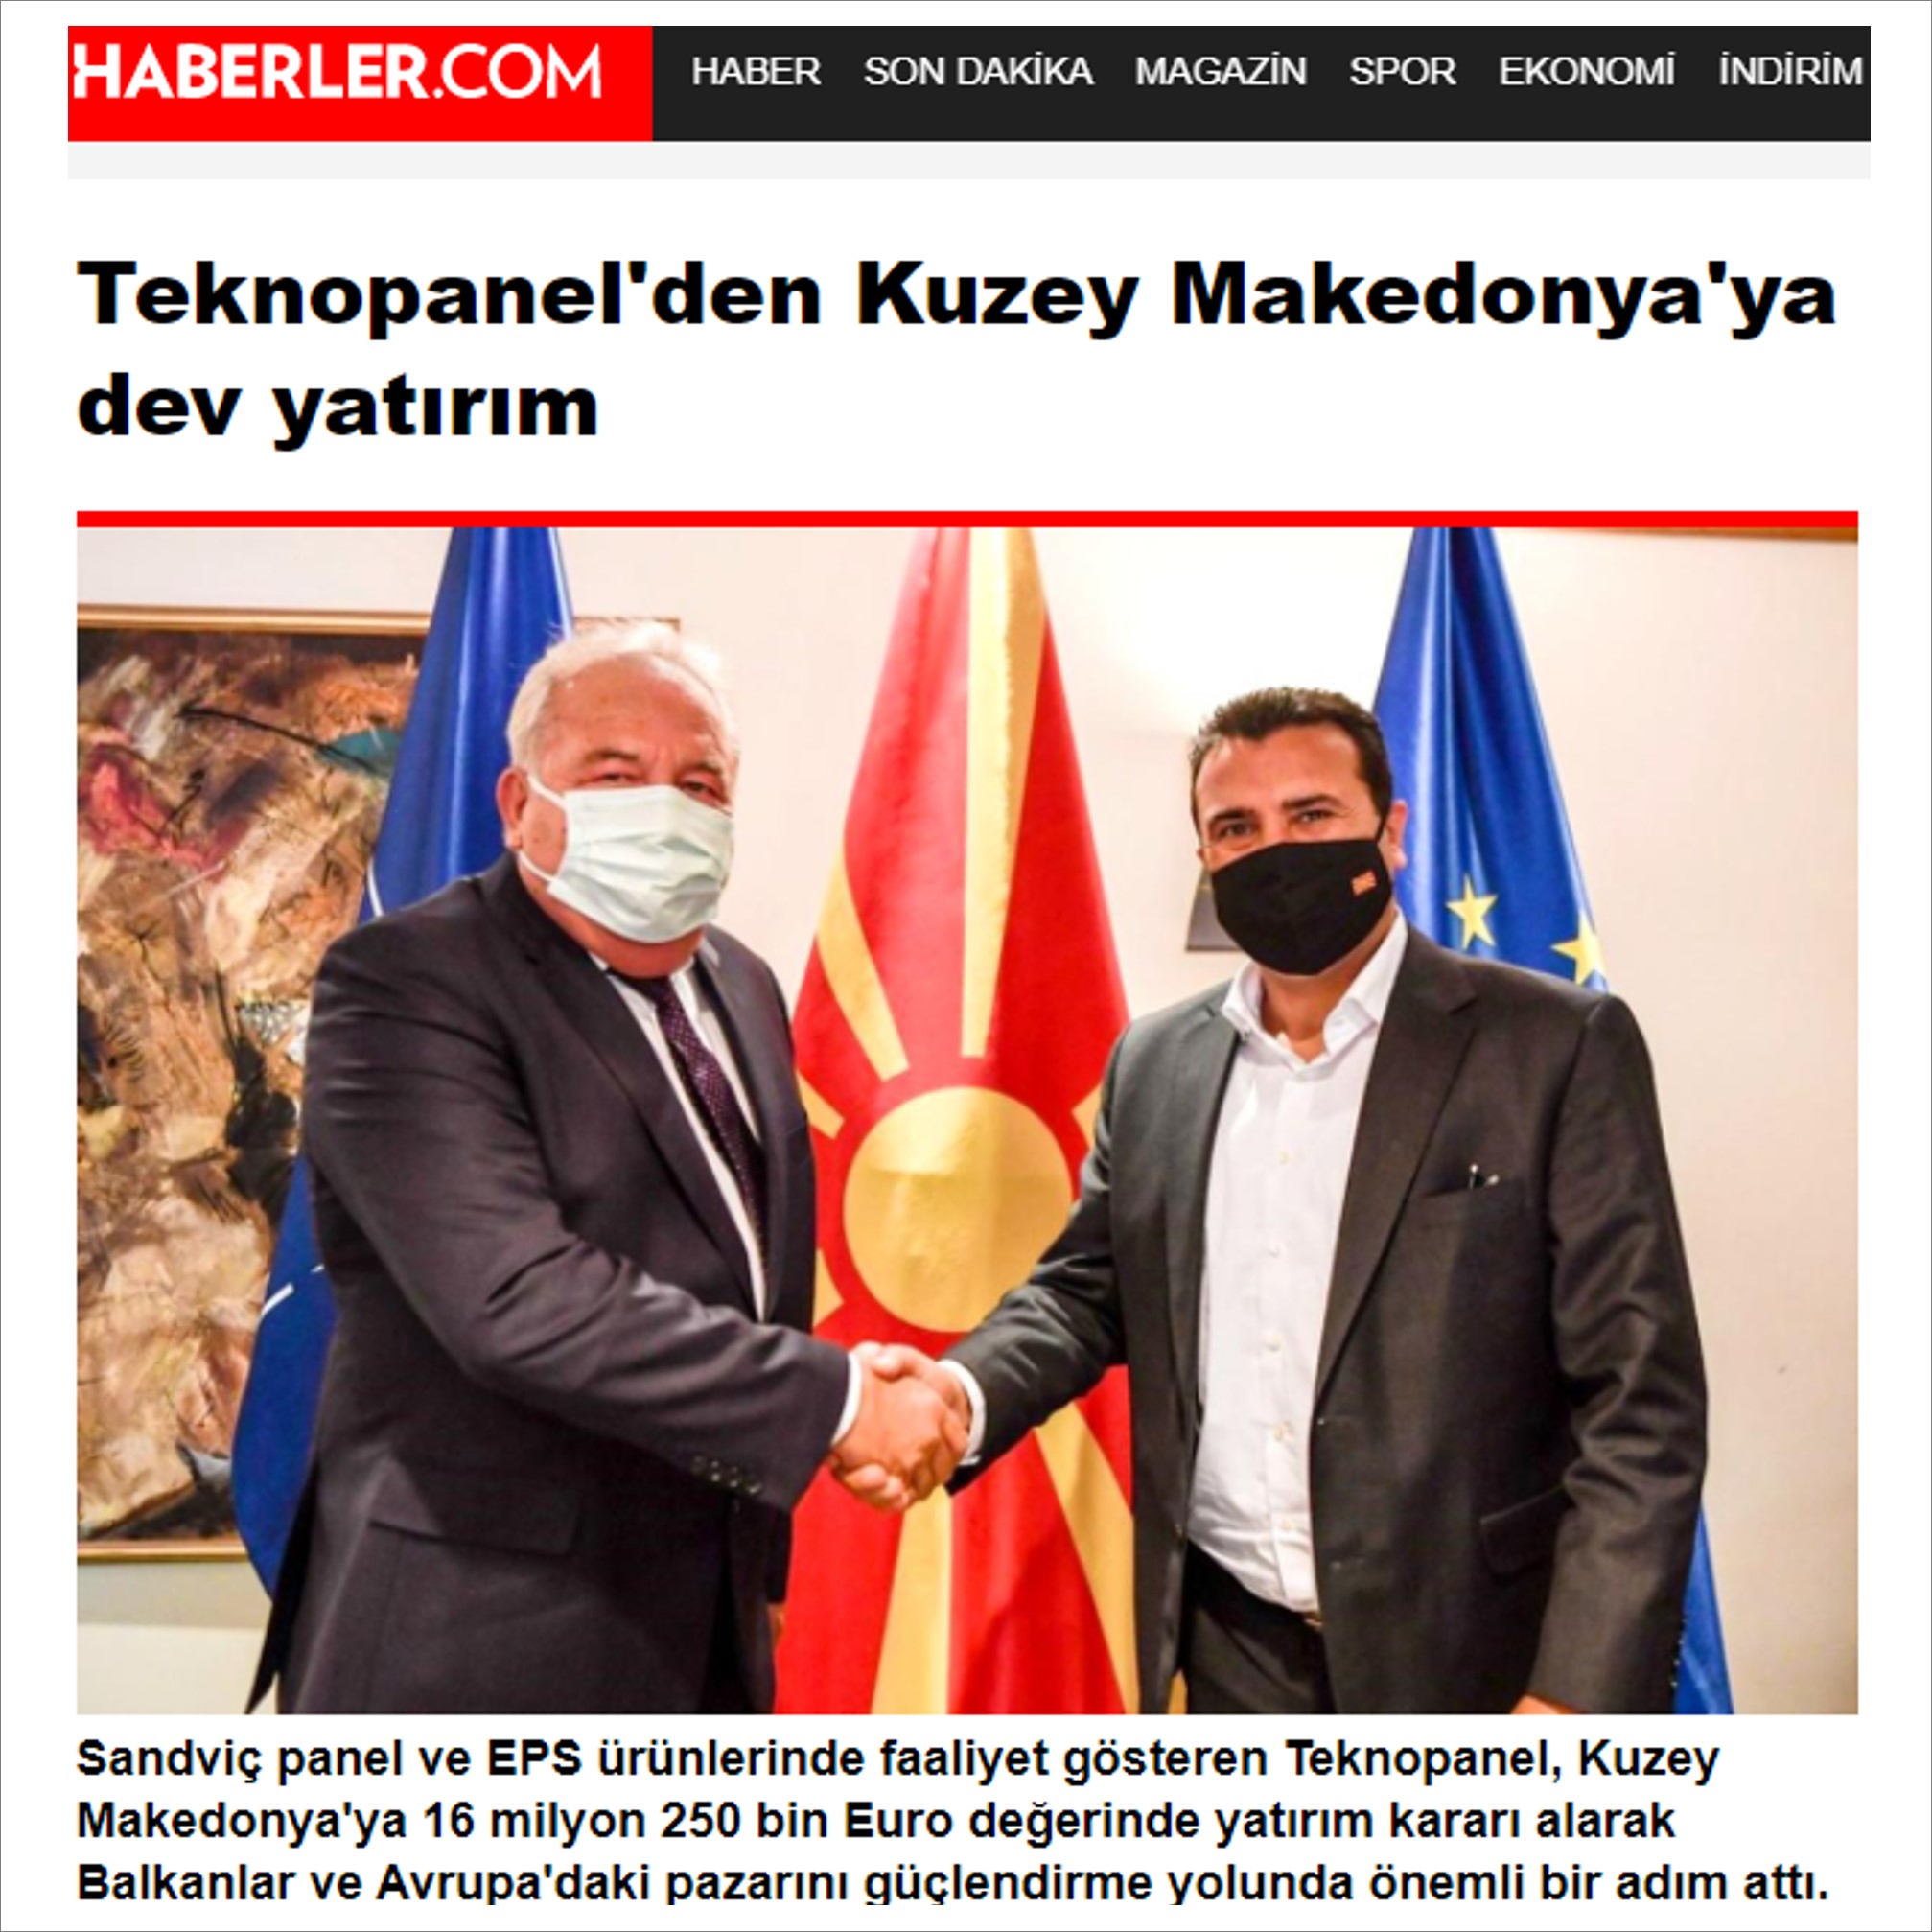 Haberler.com-"Teknopanel’den Kuzey Makedonya’ya Dev Yatırım"